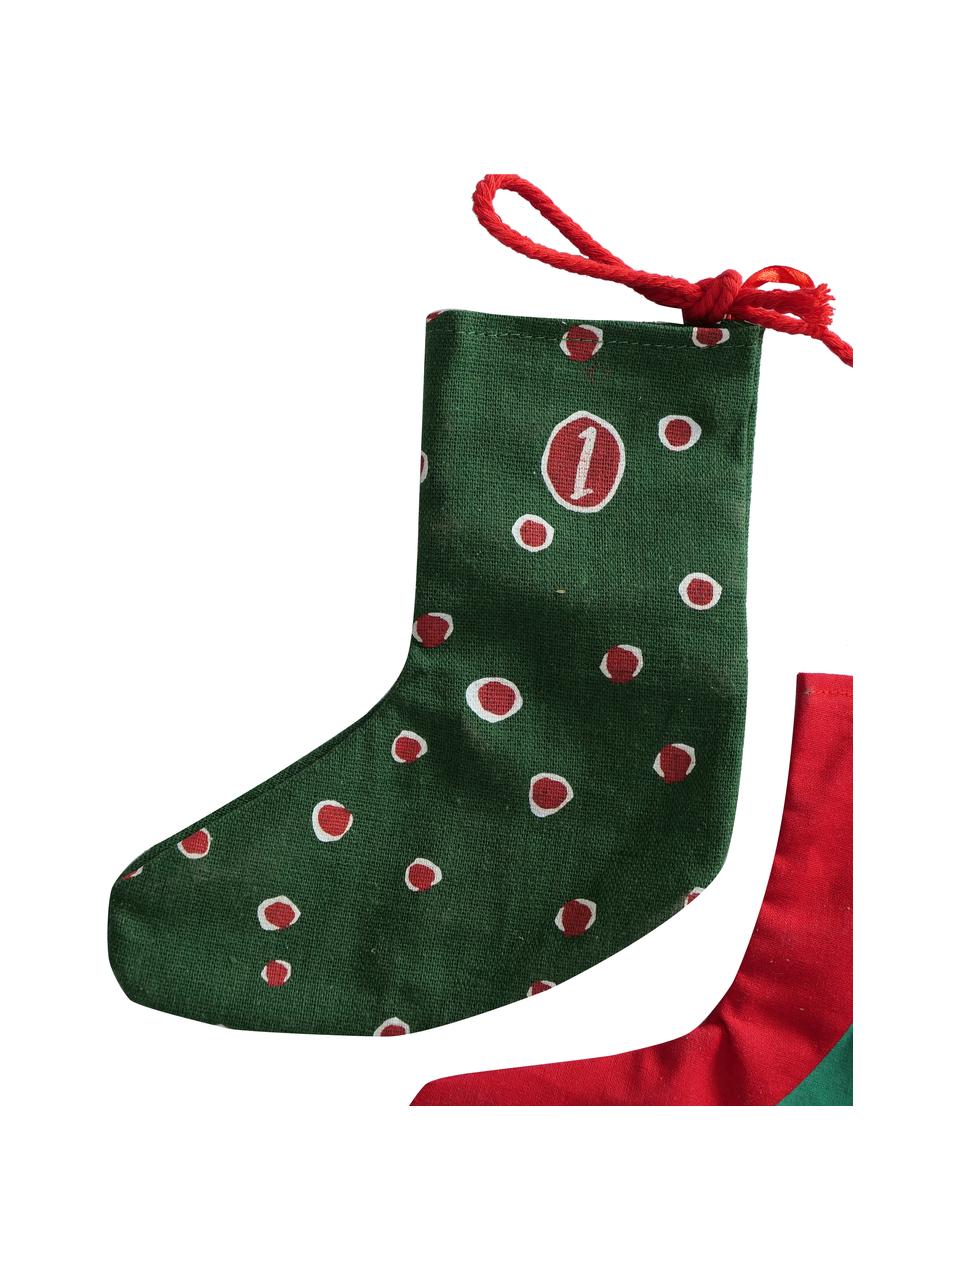 Adventný kalendár Socky, 280 cm, Plsť, Zelená, červená, biela, D 280 cm